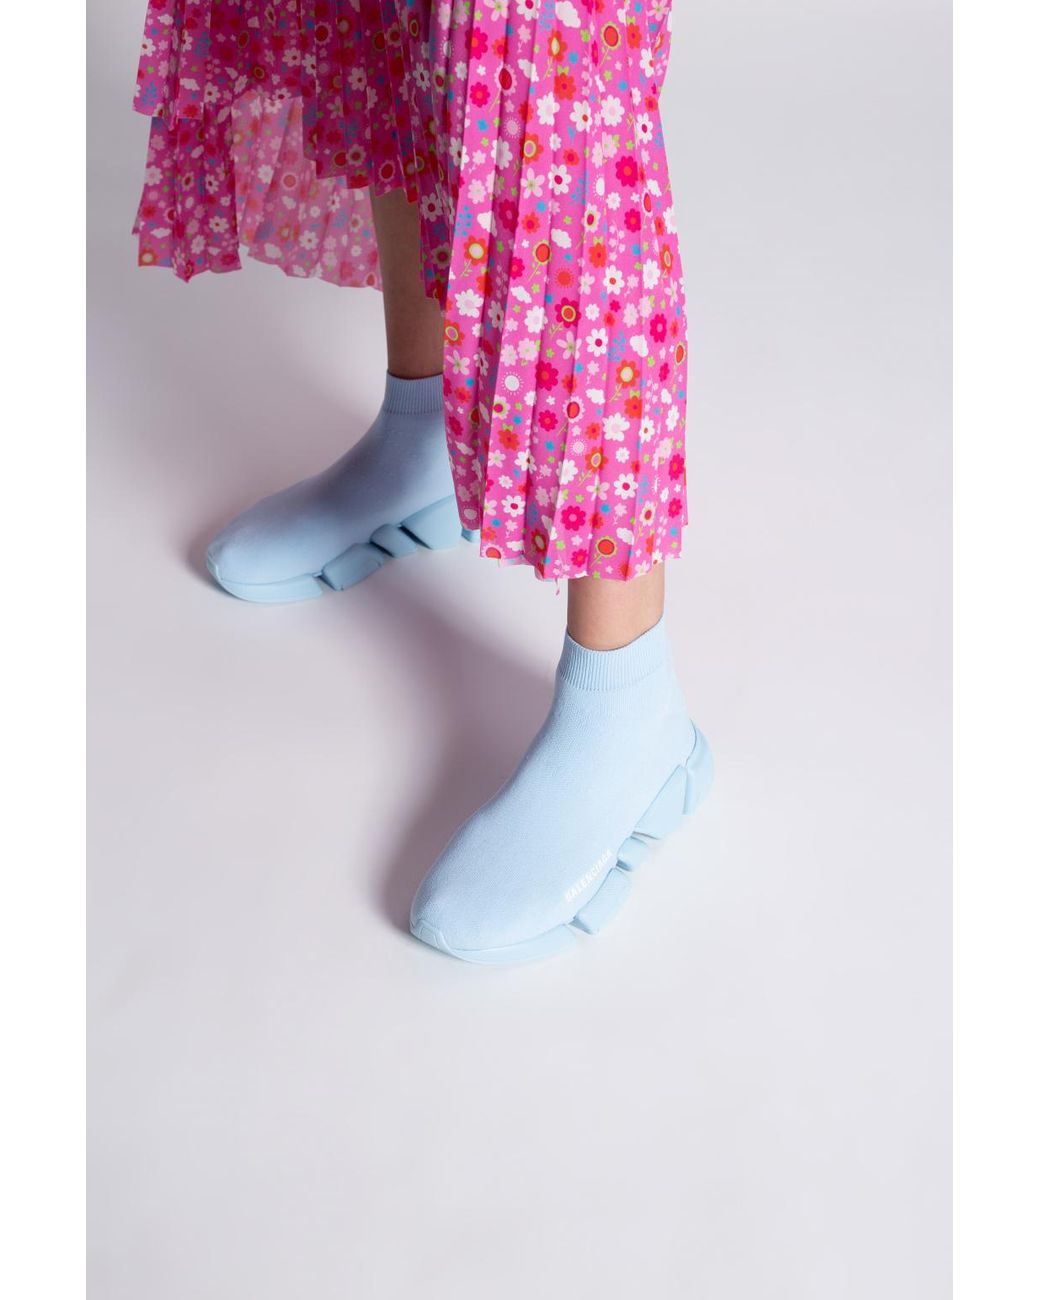 Balenciaga 'speed 2.0 Lt' Sock Sneakers in Light Blue (Blue) | Lyst